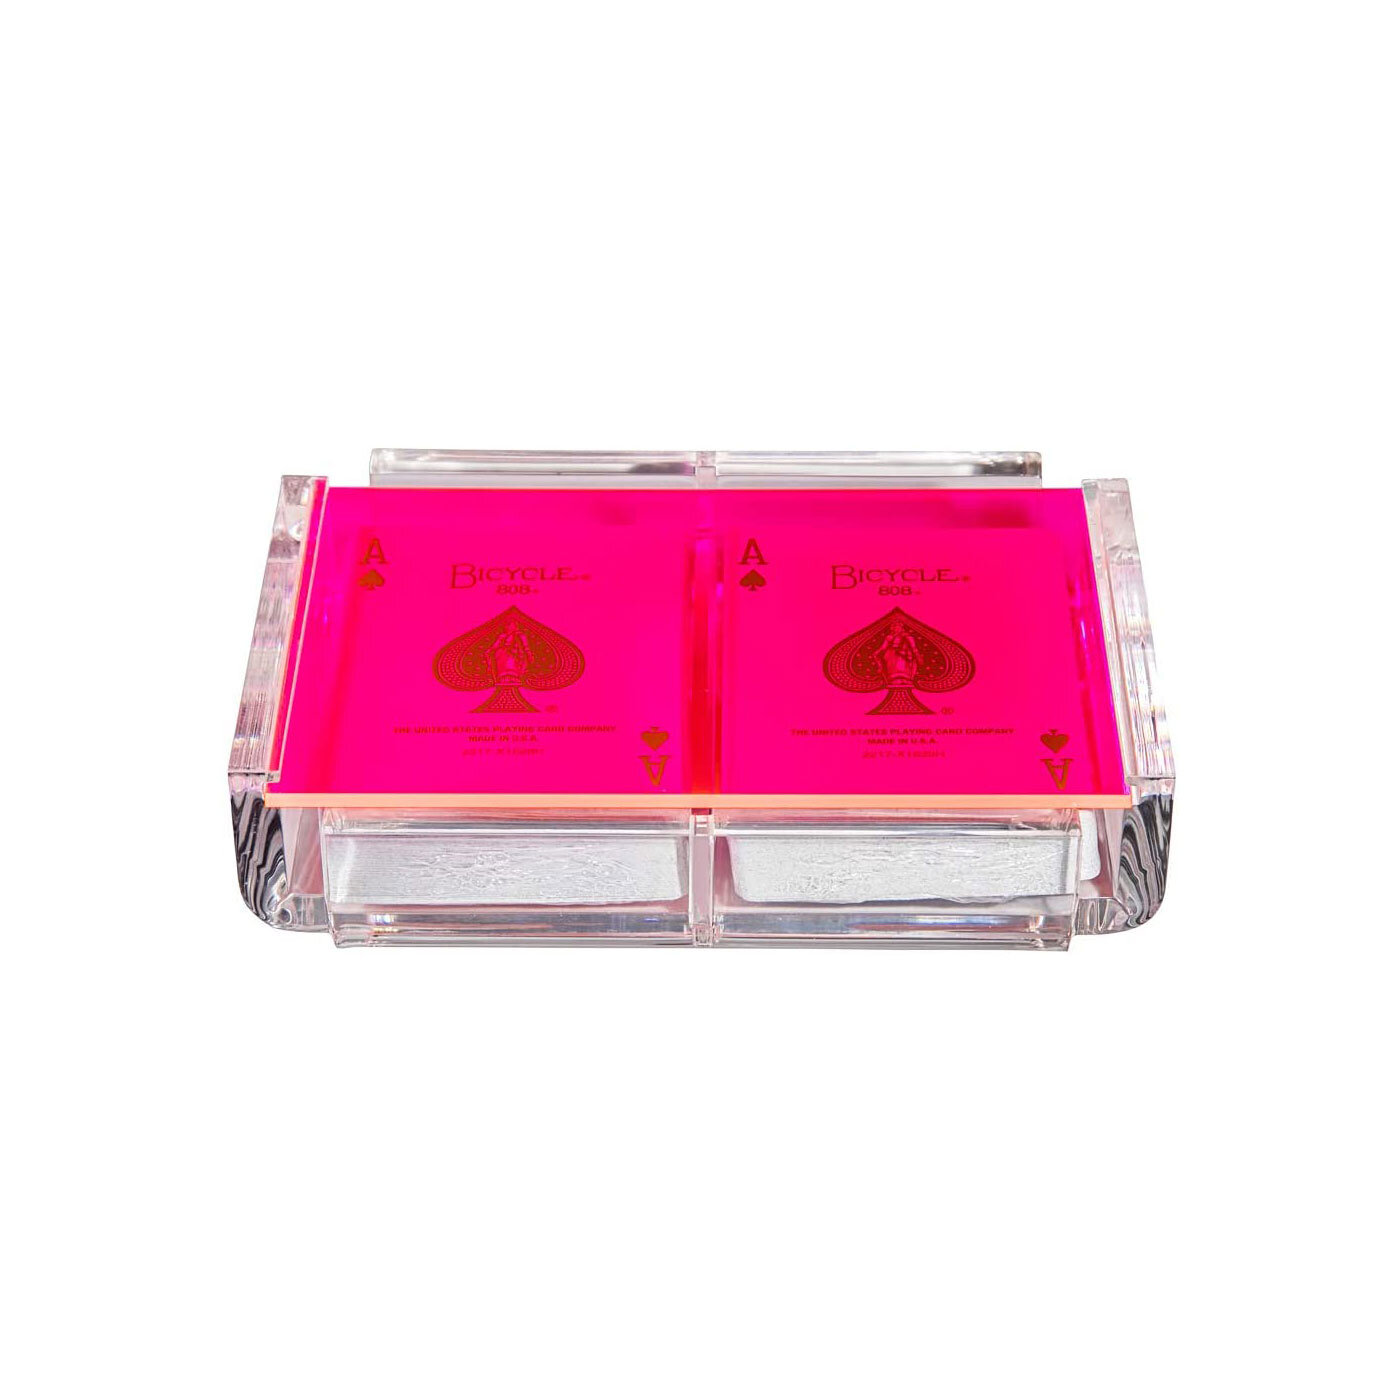 Luxe-Dominoes-Elegant-Playing-Cards.jpg